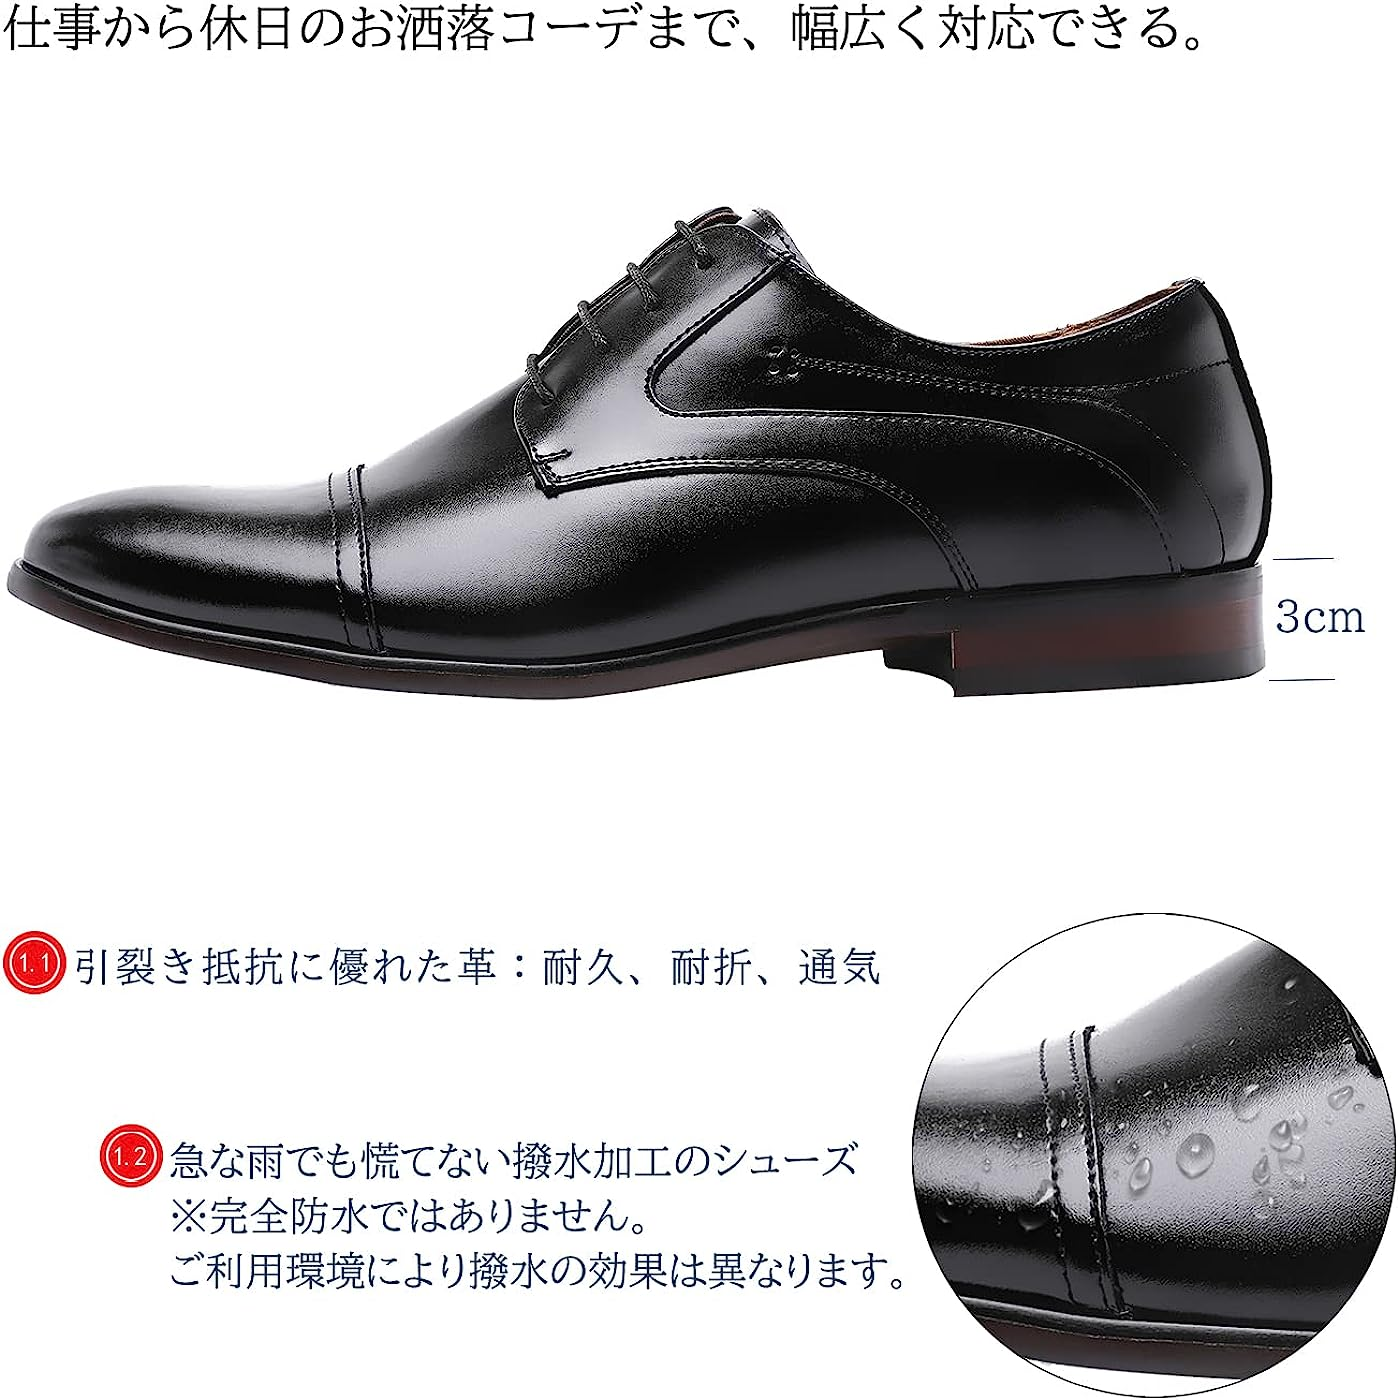 ブラック NEW 25.0 cm 3E [フォクスセンス] 革靴 メンズ ビジネスシューズ ドレスシューズ ストレートチップ 高級紳士靴 本革 外羽根  軽量・防水 高級レザー フォーマル ::96295